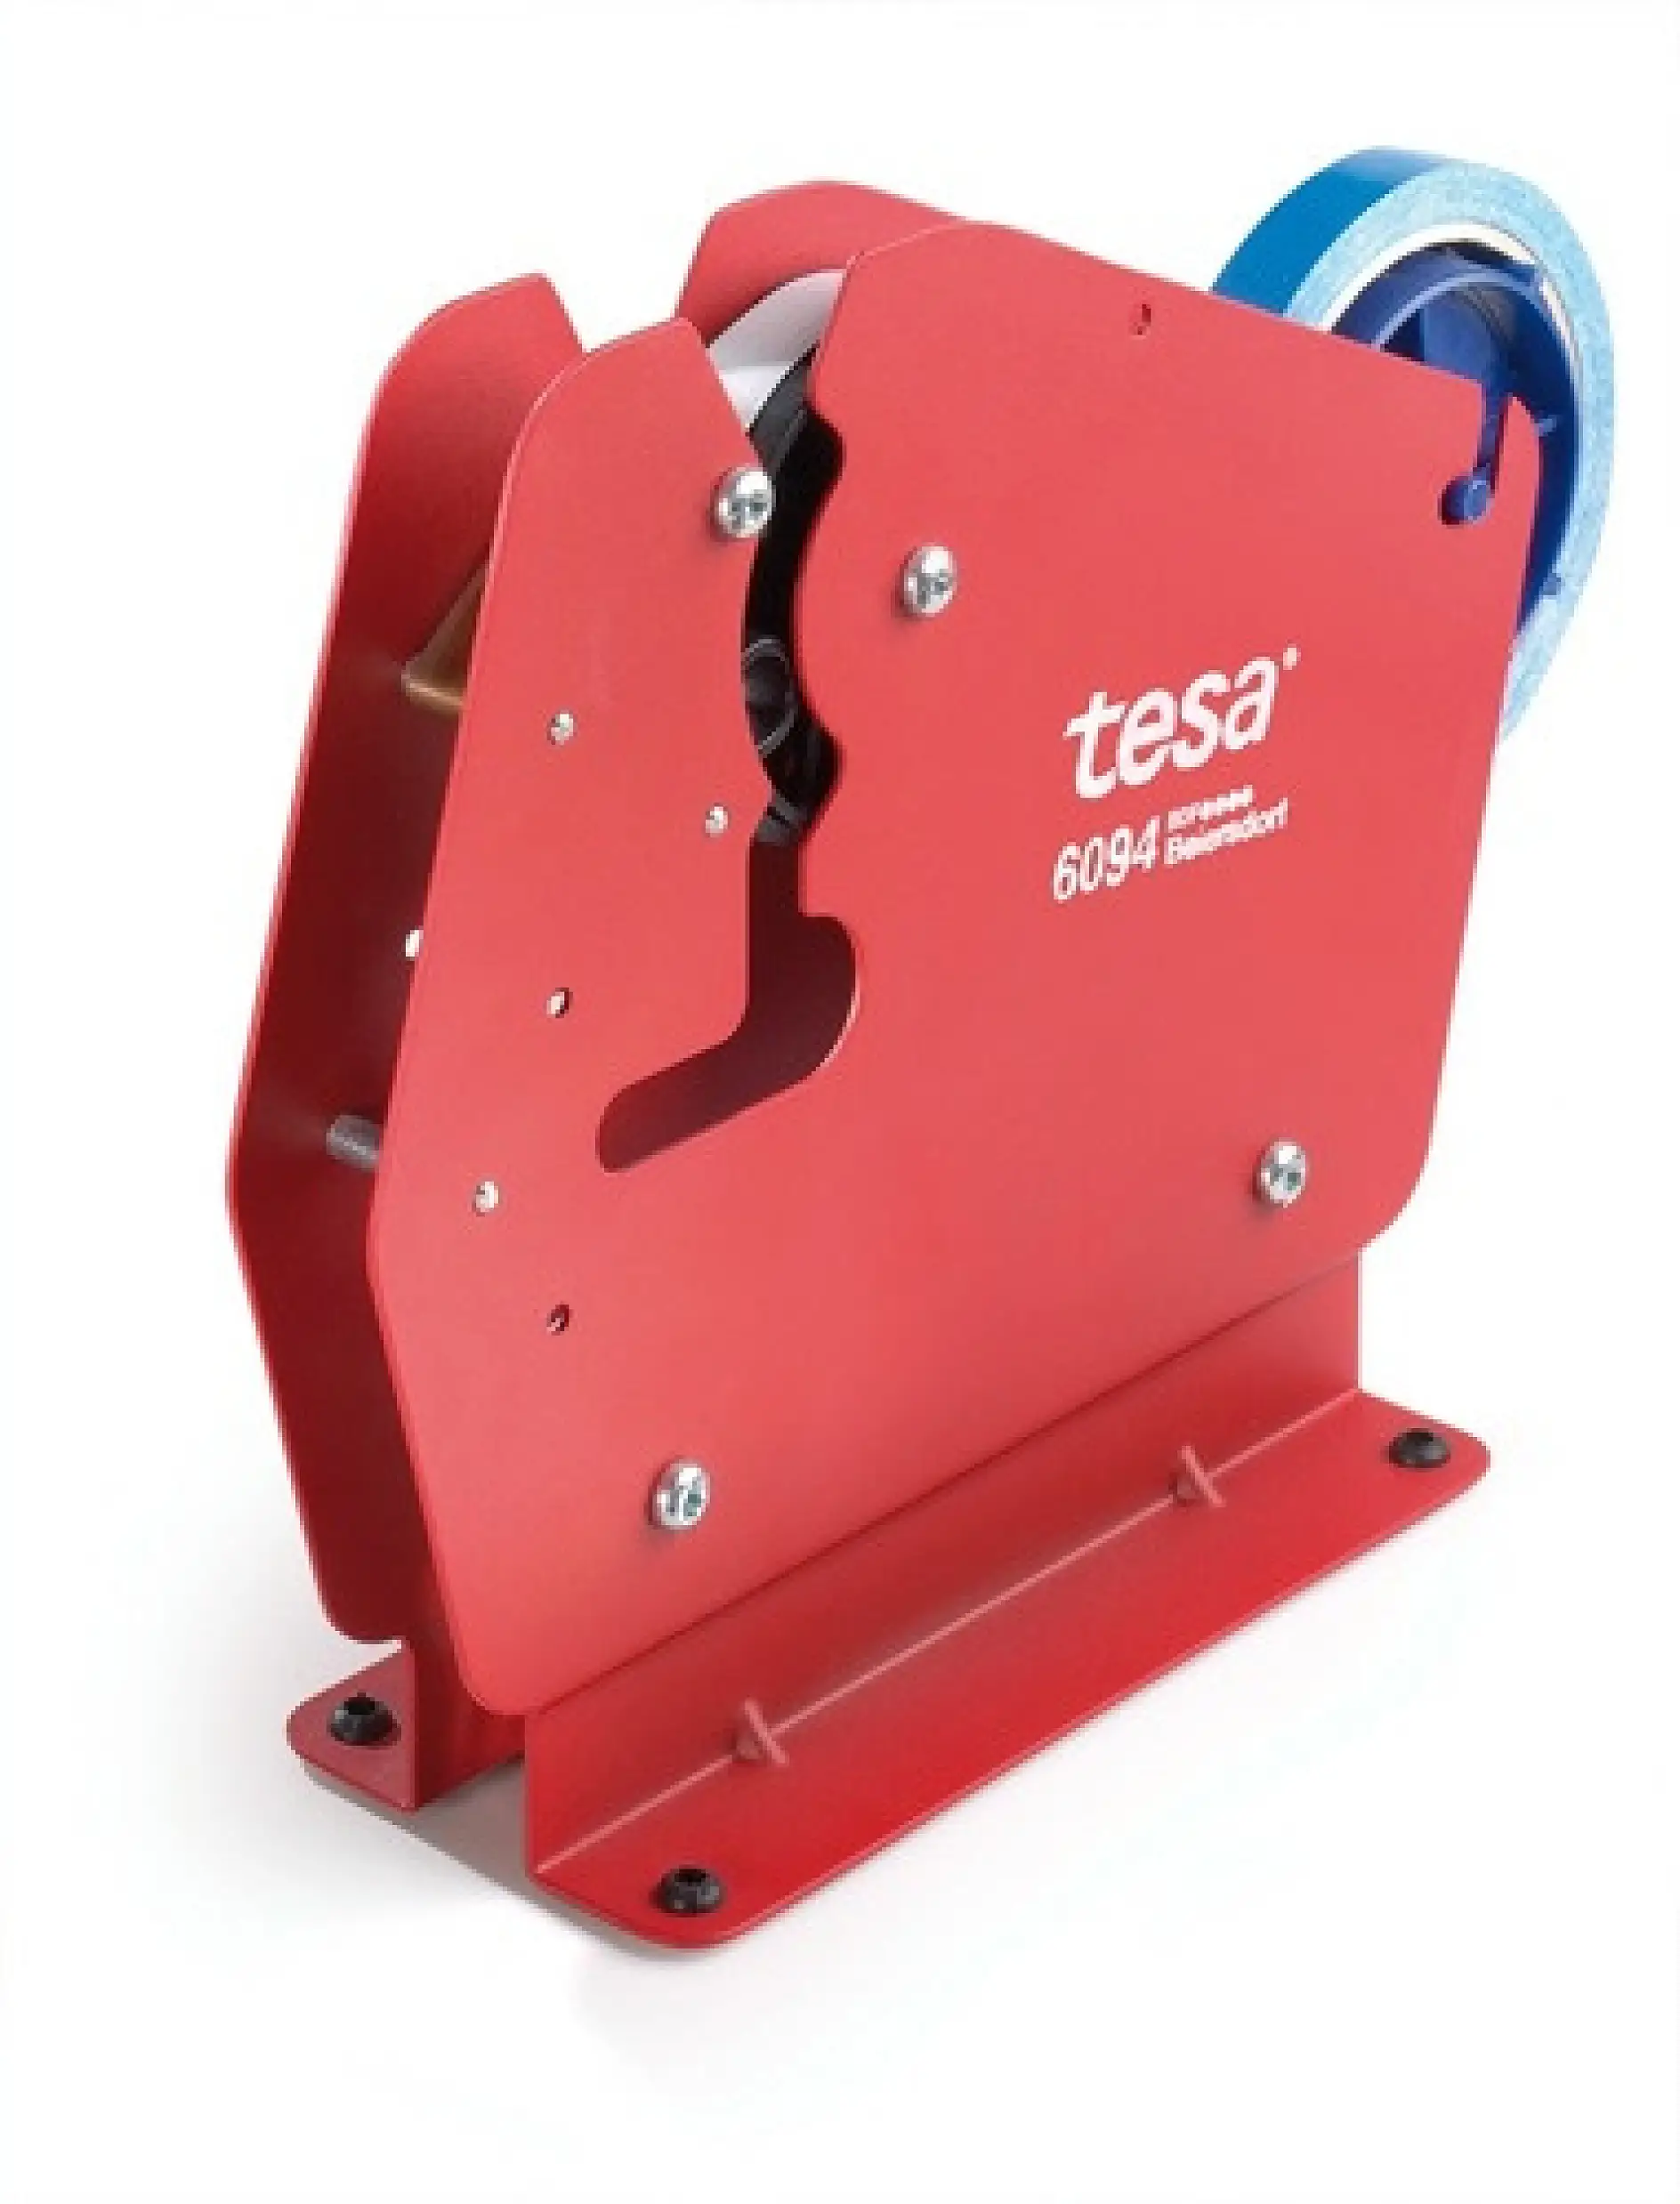 El dispensador de cinta de sellado para bolsas tesa 4204 ha sido diseñado para sellar de forma eficaz bolsas de plástico o papel.